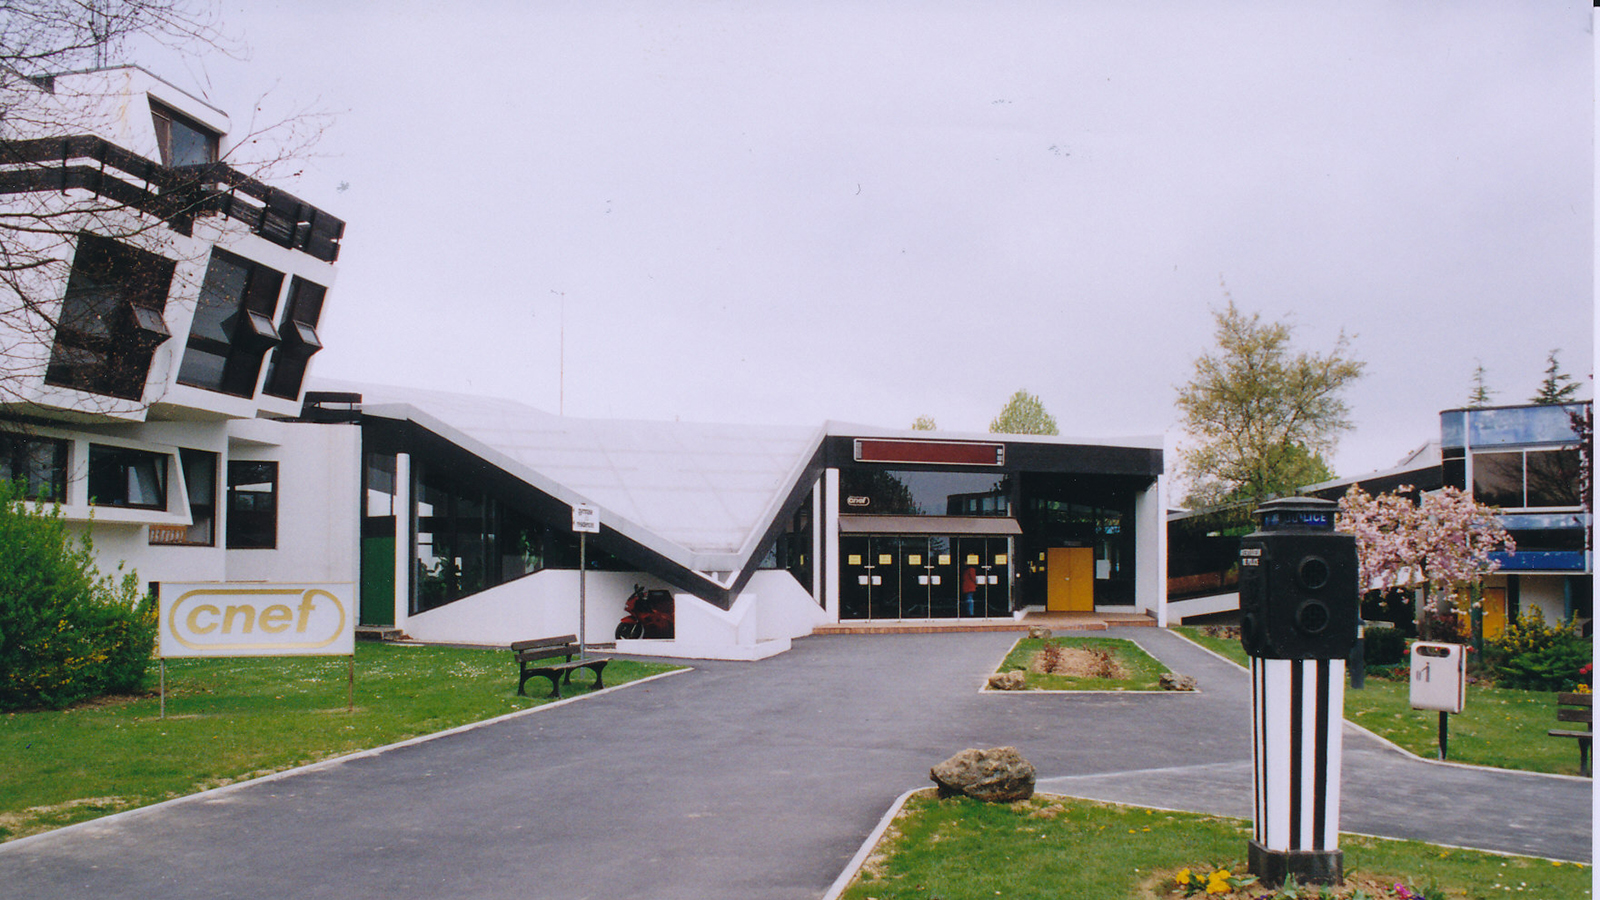 Le Centre National d'Études et de Formation (CNEF) de la police nationale, 1997